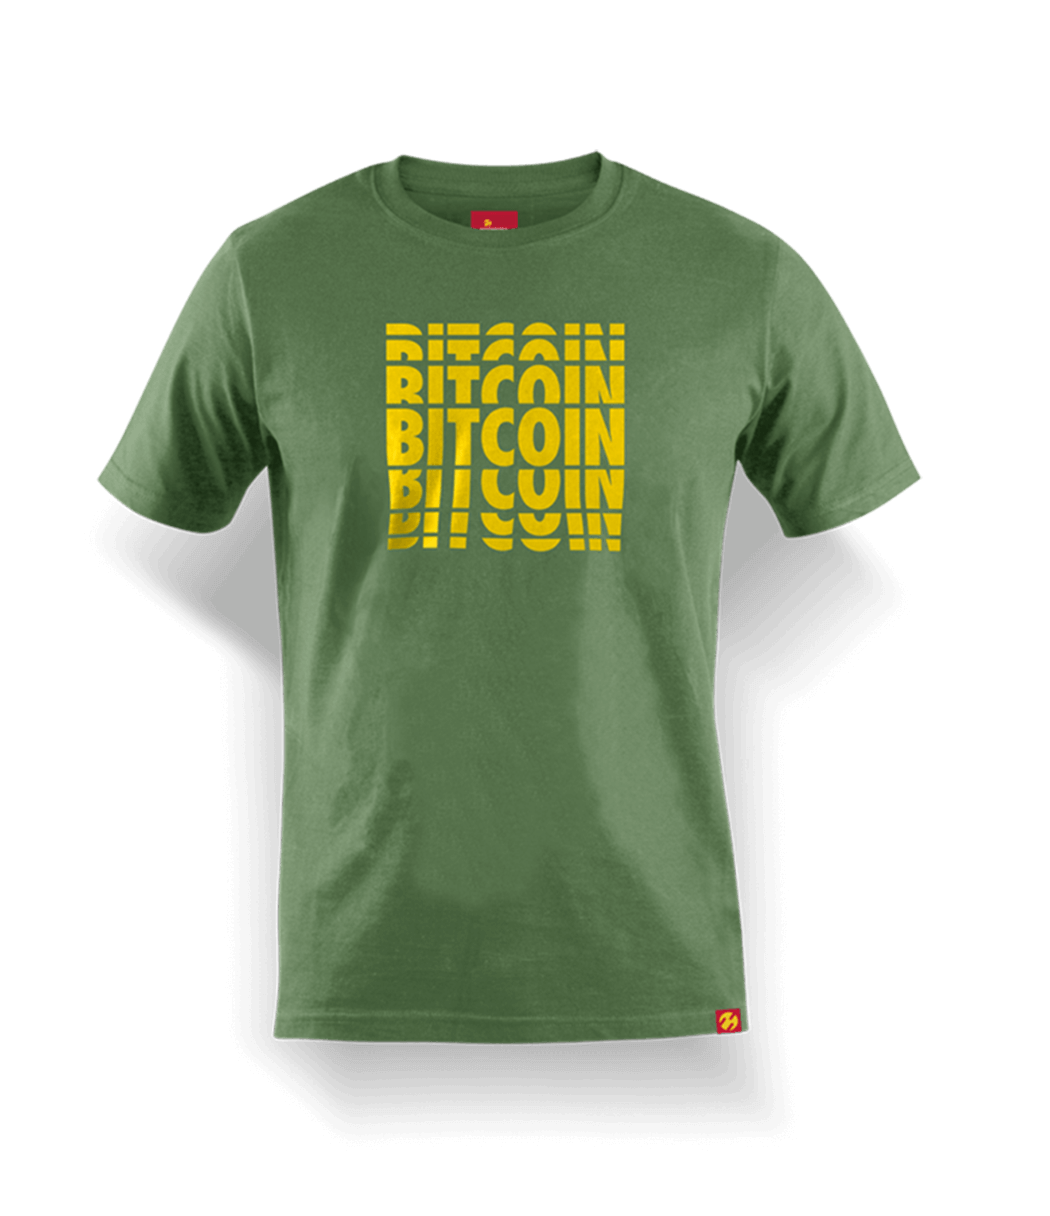 Das Bitcoin Summer 2022 Shirt überzeugt durch seine enorm hochwertige Verarbeitung. Das Shirt ist in hoher 200g Qualität gefertigt.